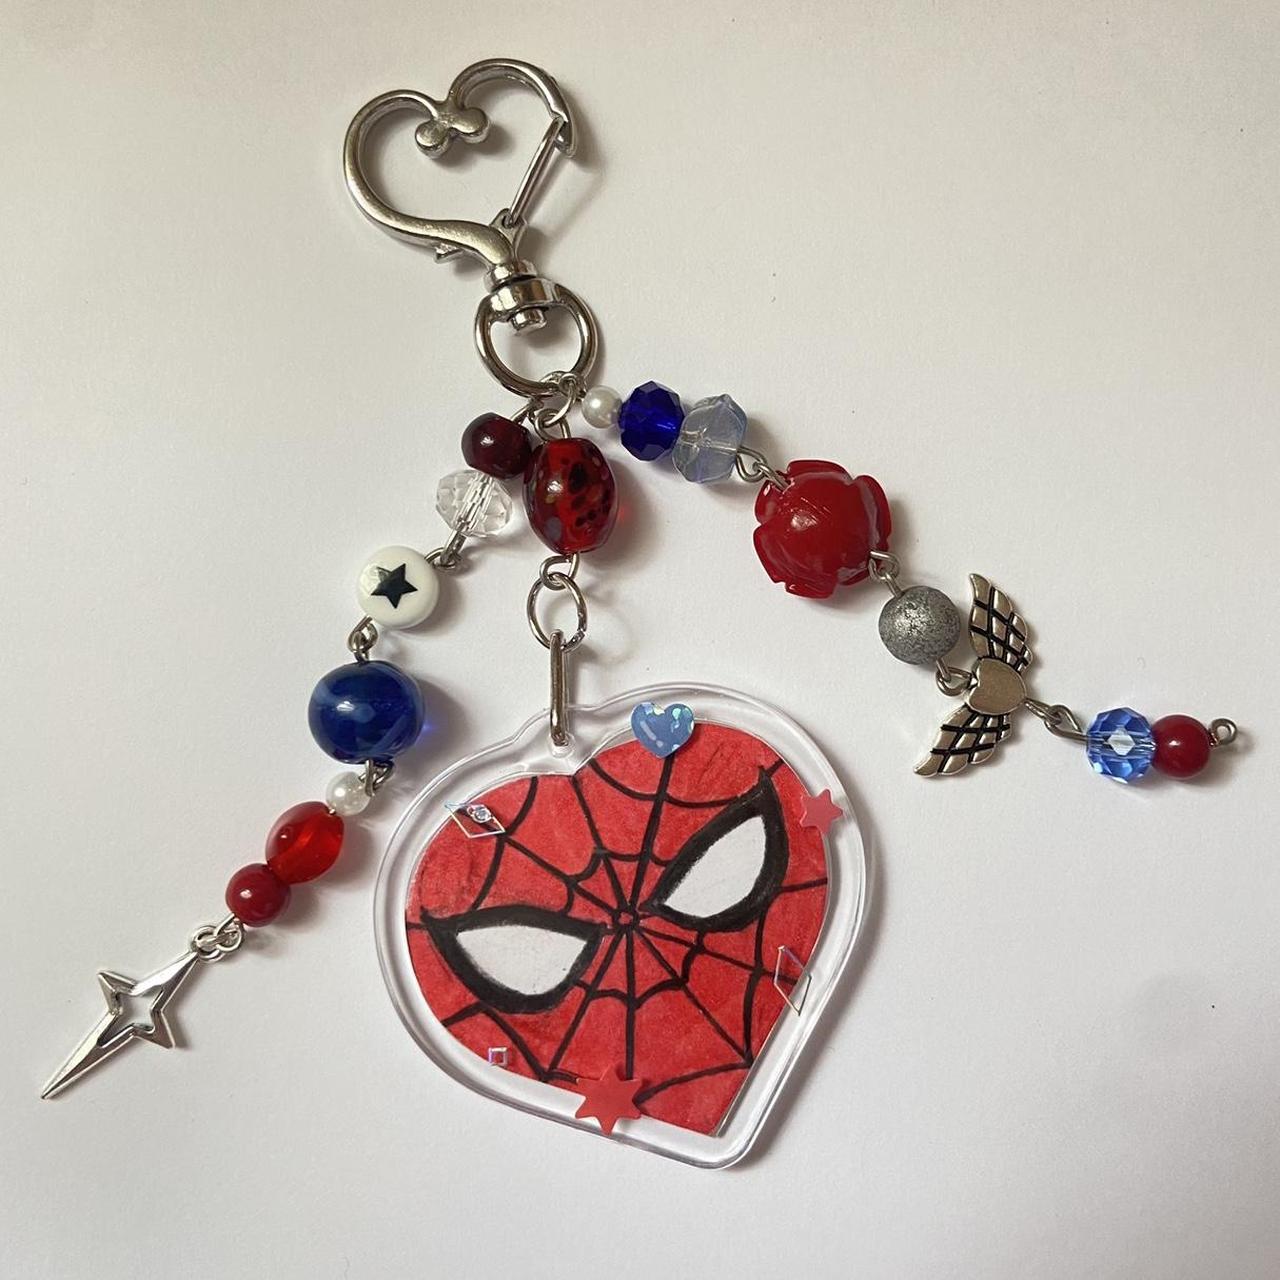 Spider-Man keychain #spiderman #spiderman2099 - Depop